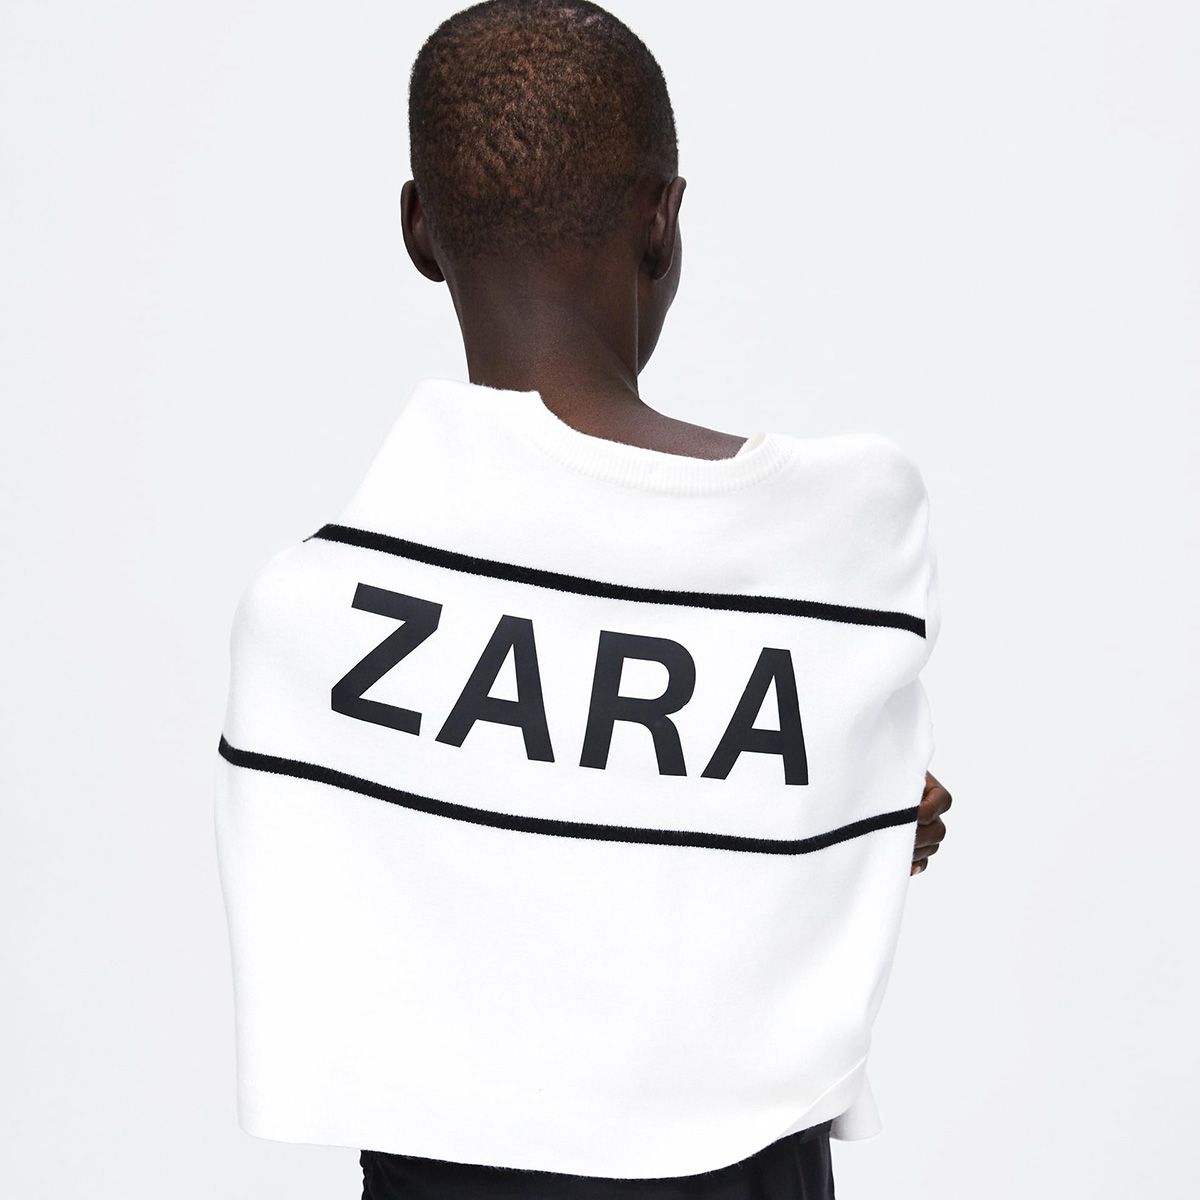 My Zara Sale Finds - Guinwa